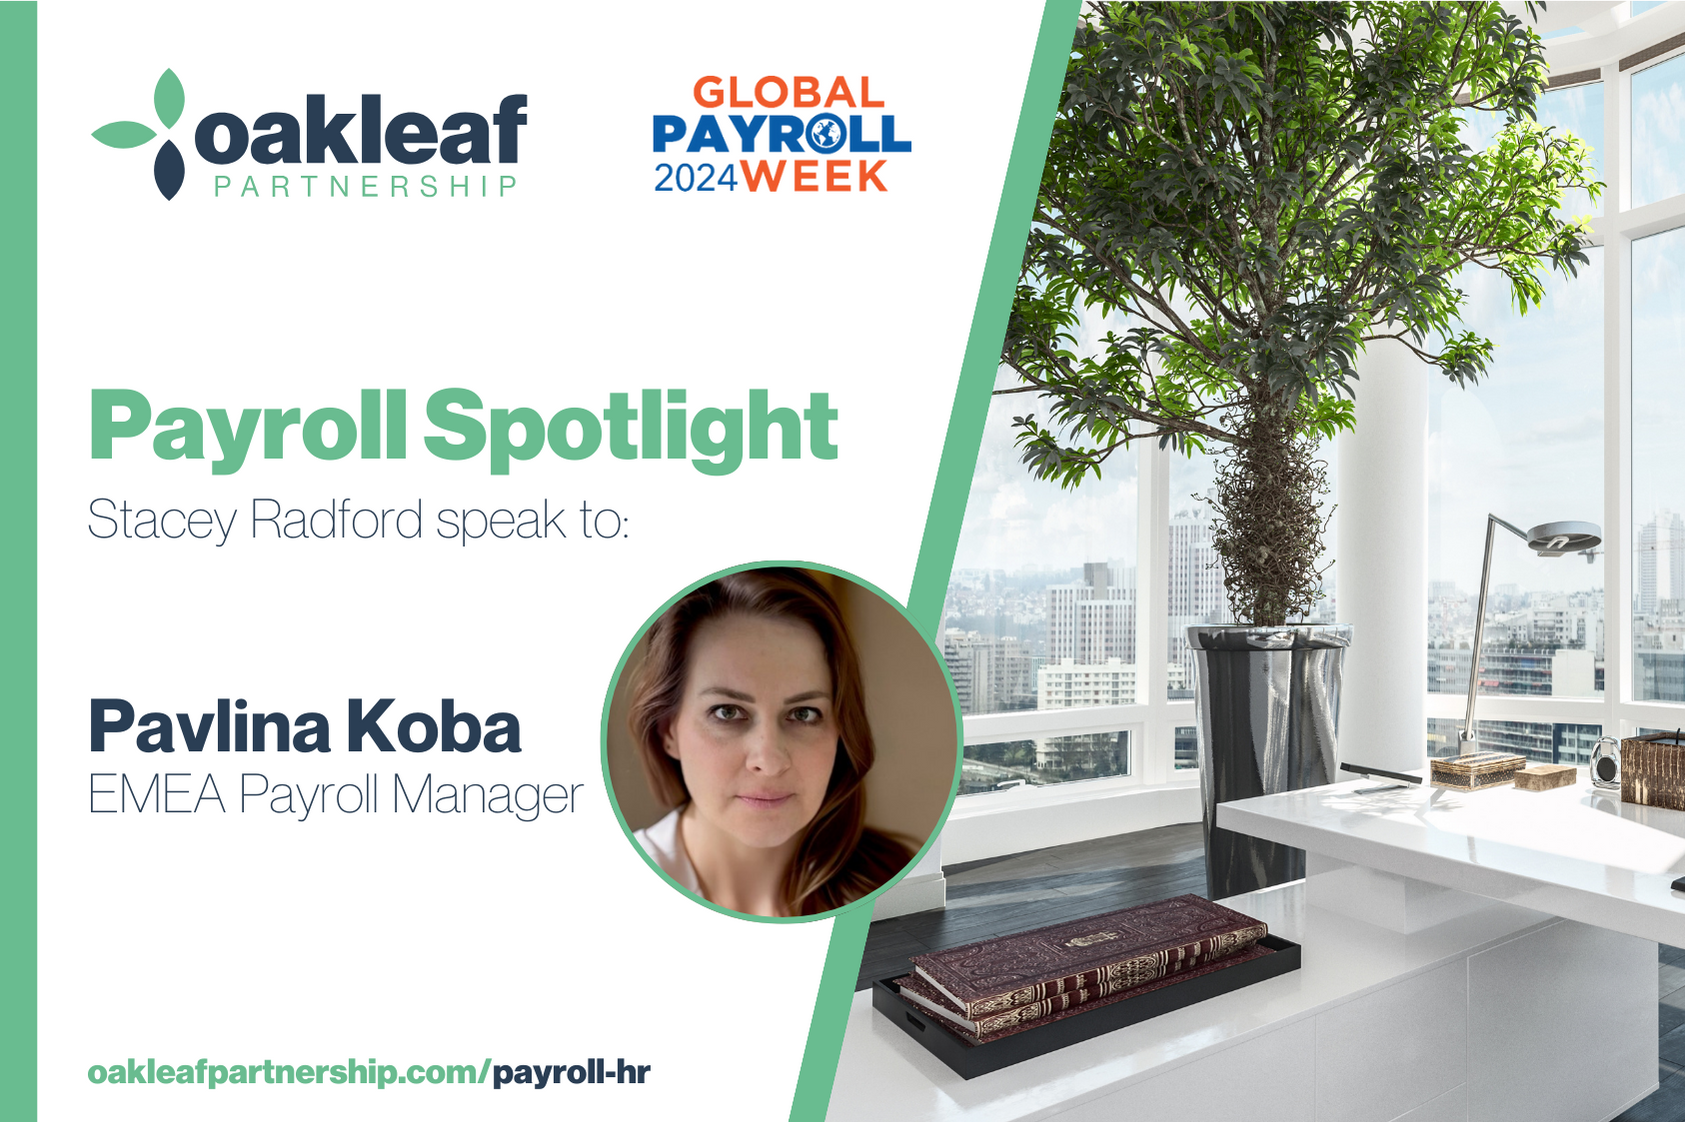 global payroll week - Pavlina Koba